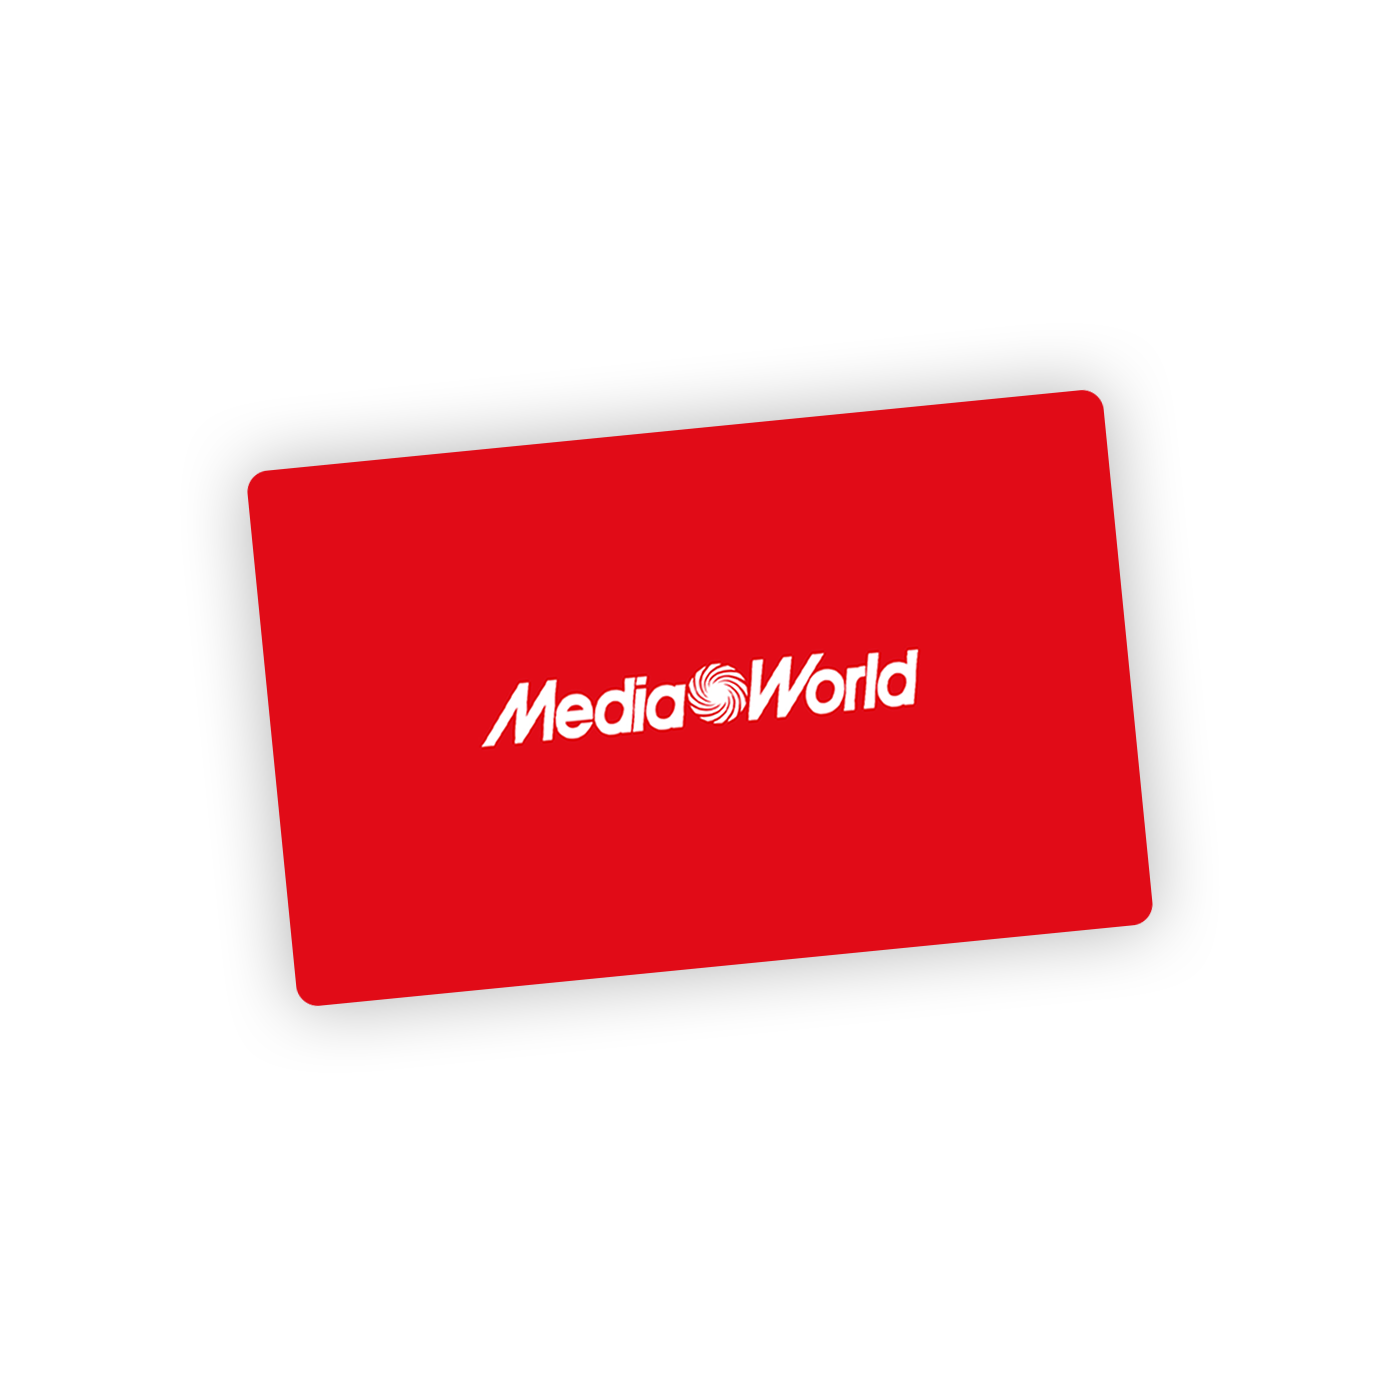 Gift Card MediaWorld